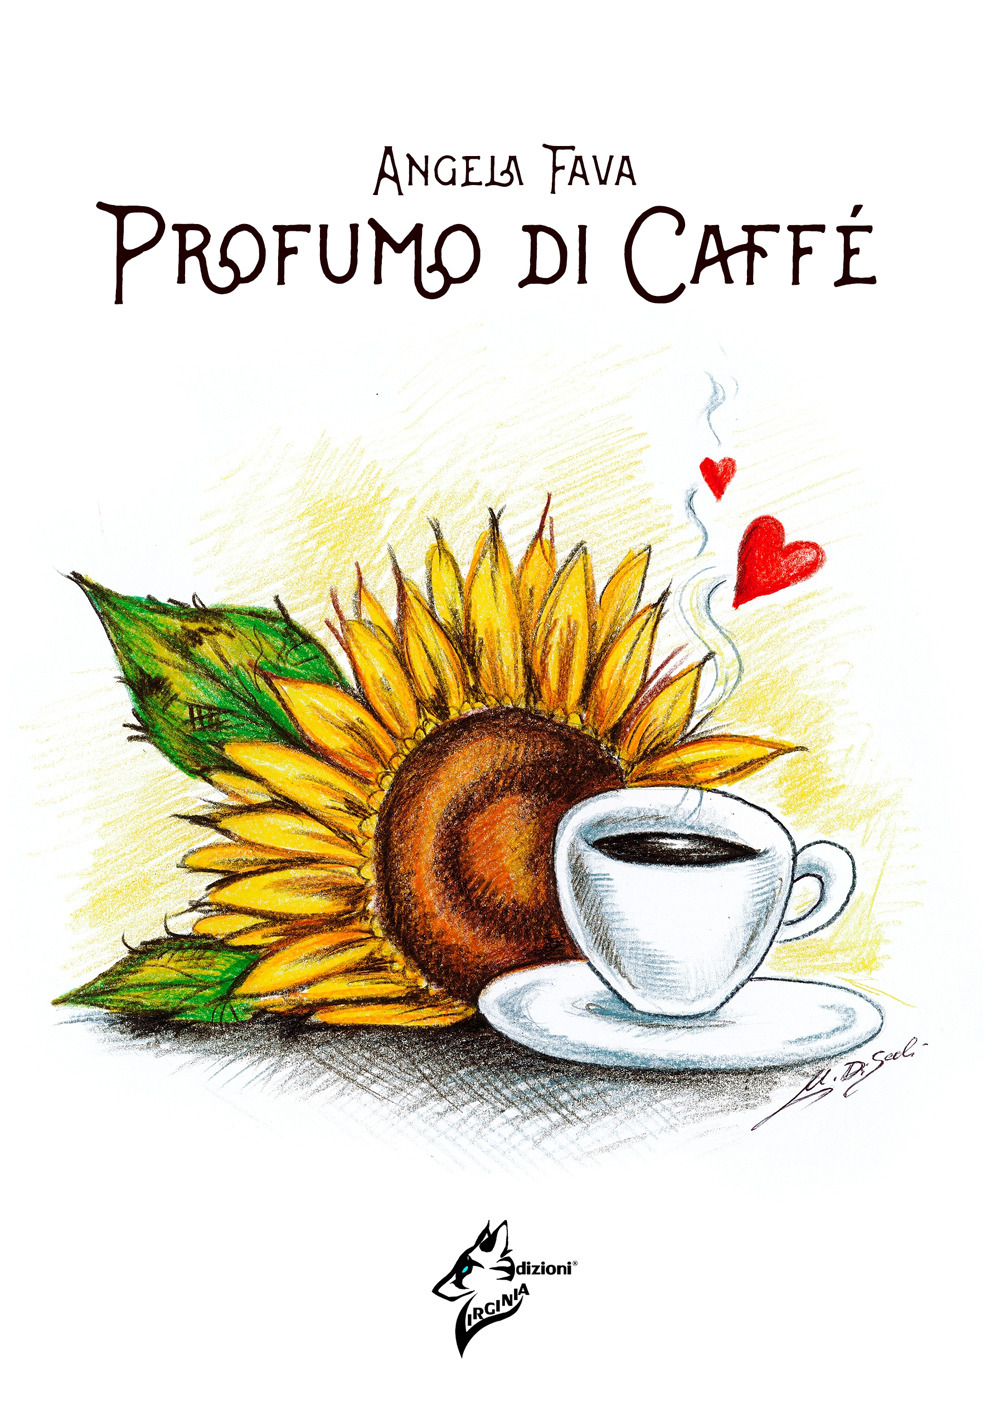 Image of Profumo di caffè